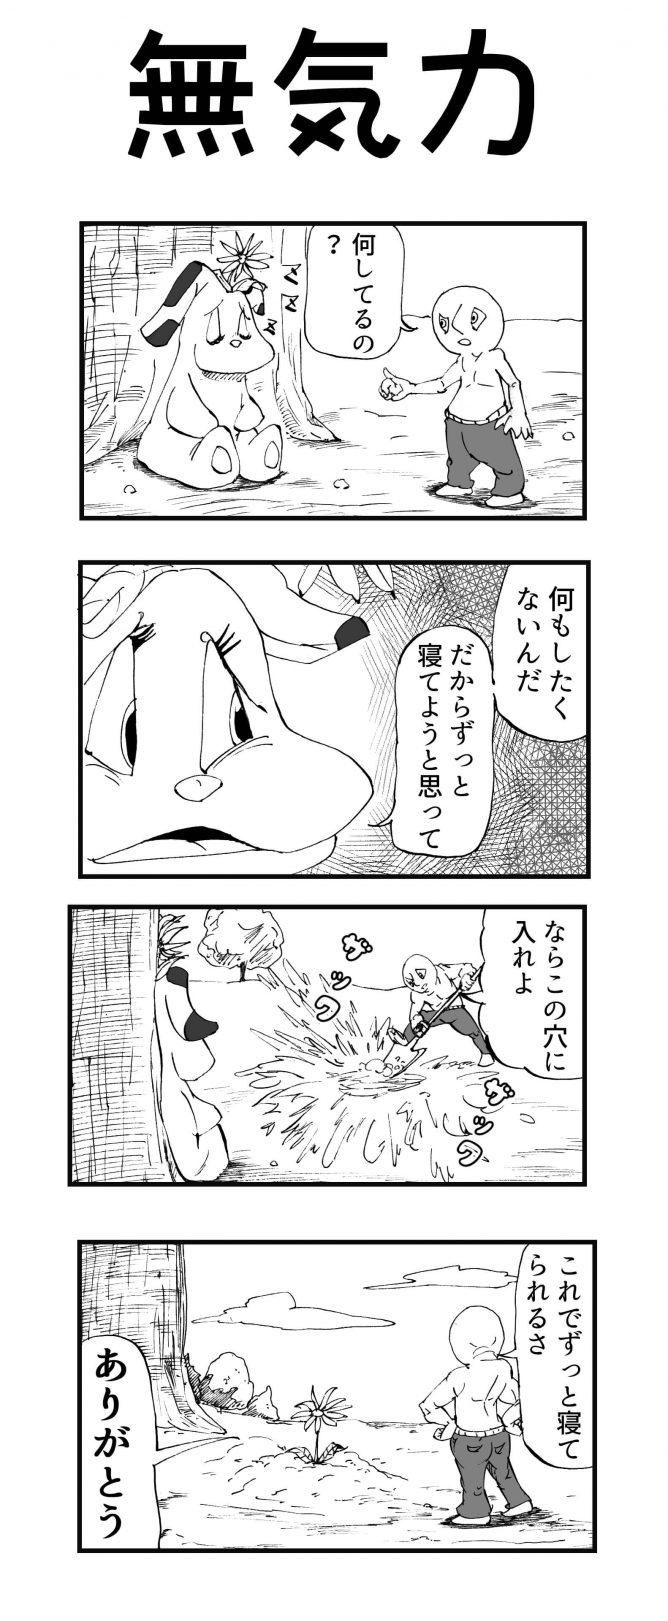 無気力 四コマ漫画